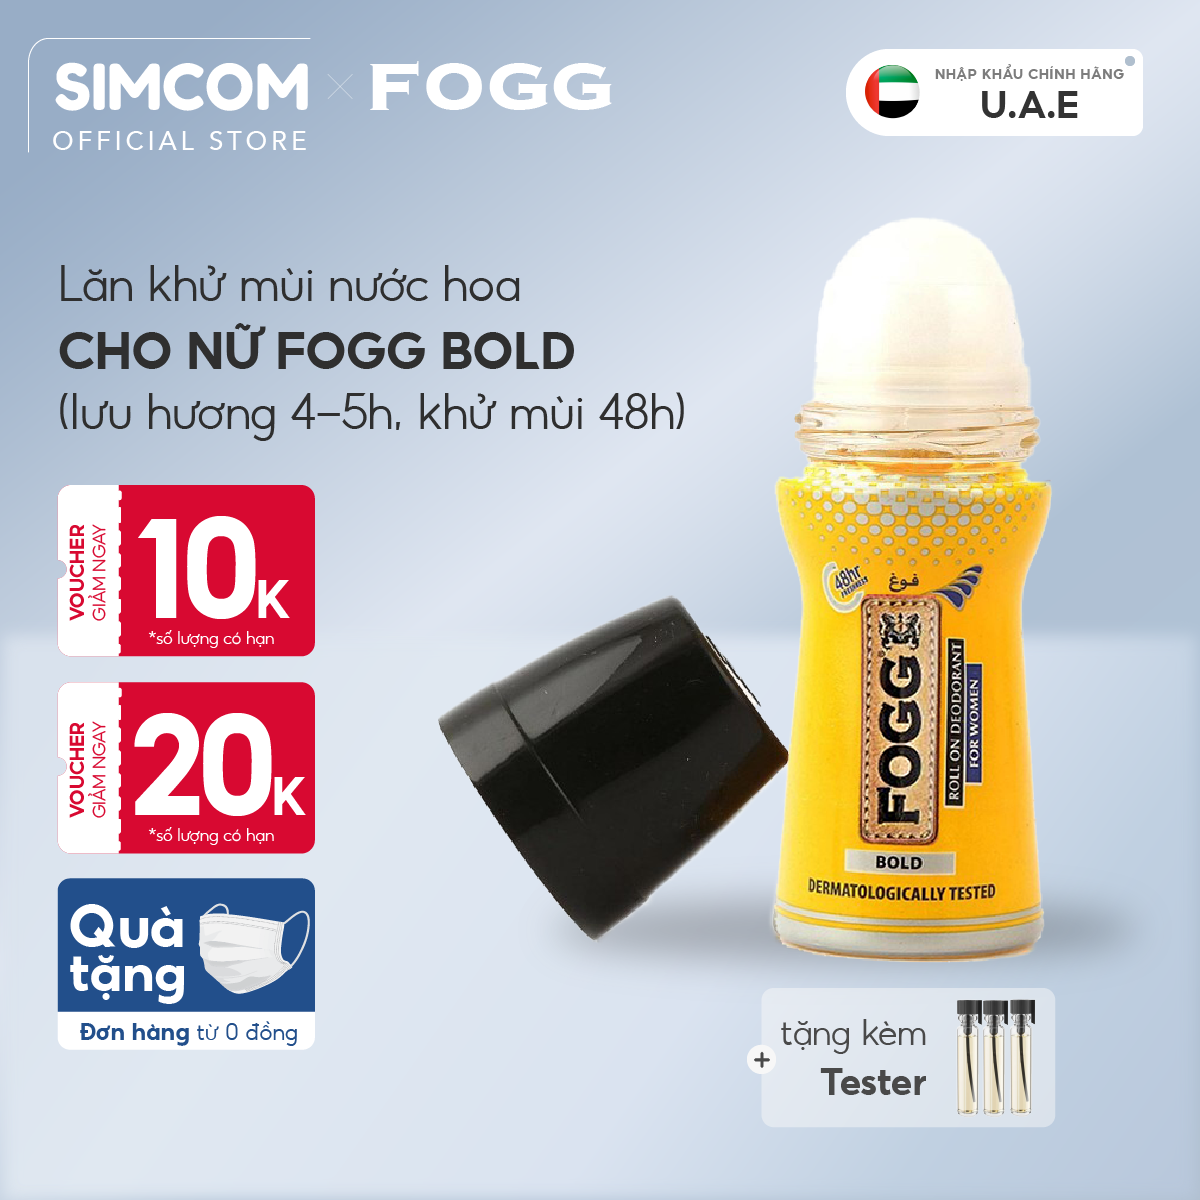 Lăn khử mùi hương nước hoa FOGG Bold 50ml, chính hãng dubai, dành cho nữ, dùng để lăn nách, giảm thiểu mùi cơ thể, lưu hương lâu 4-5 tiếng, khử mùi 48h, không kích ứng da, không thâm nách, không ố áo, Simcom